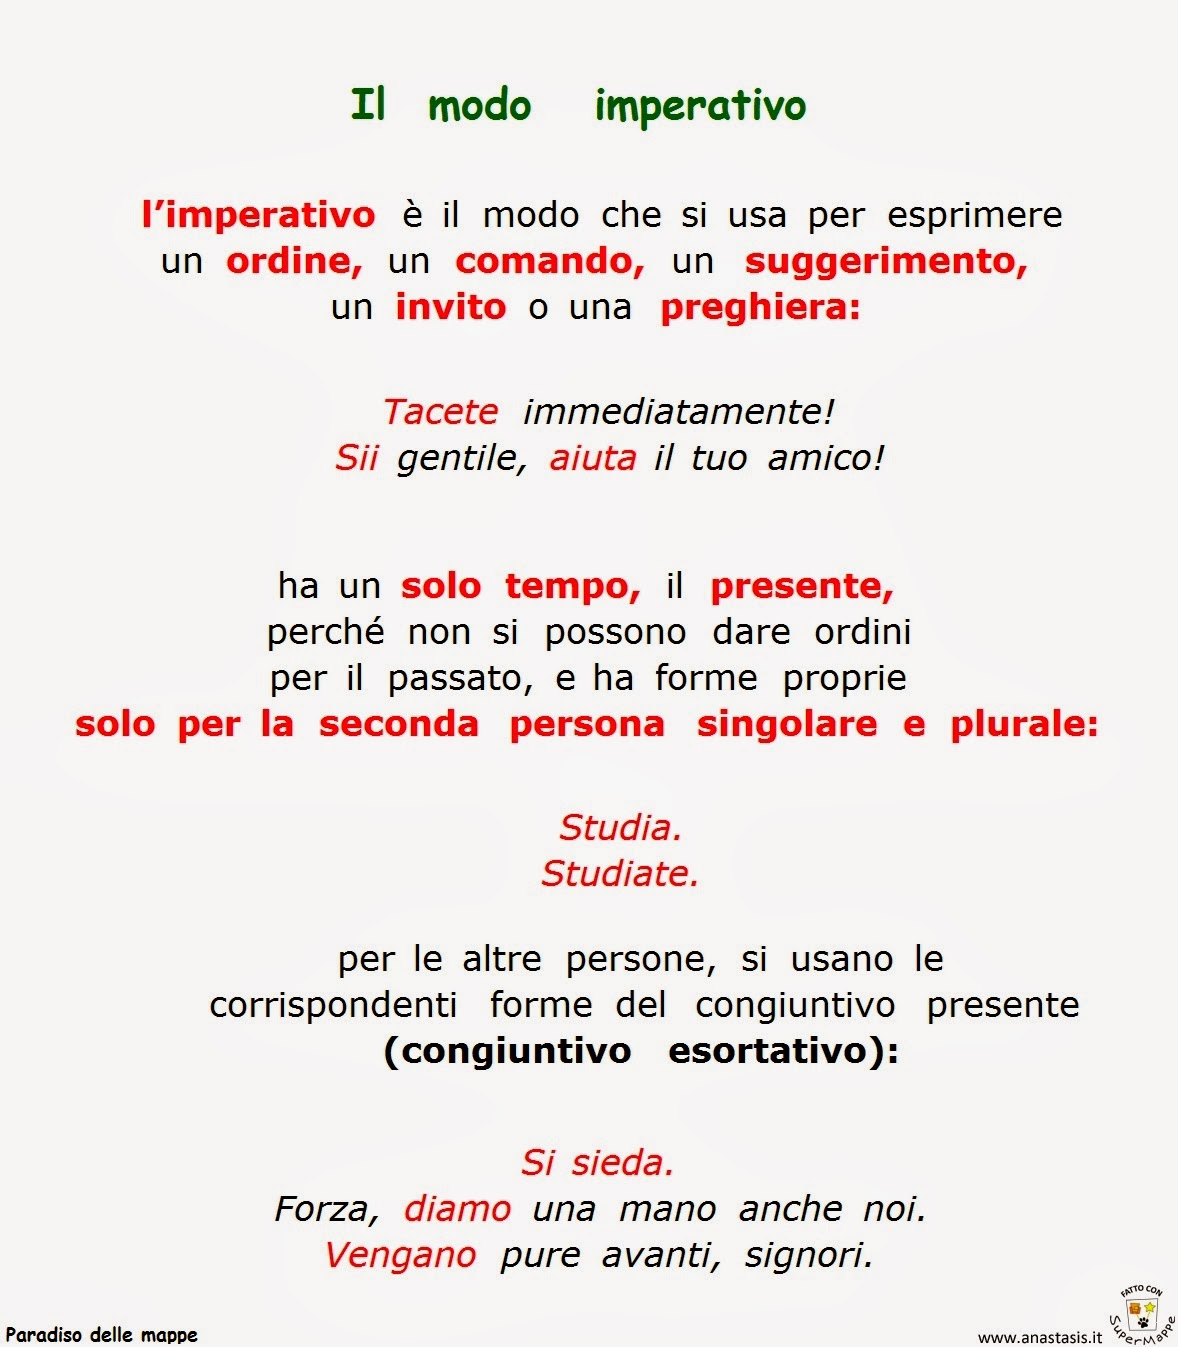 Il modo imperativo in italiano